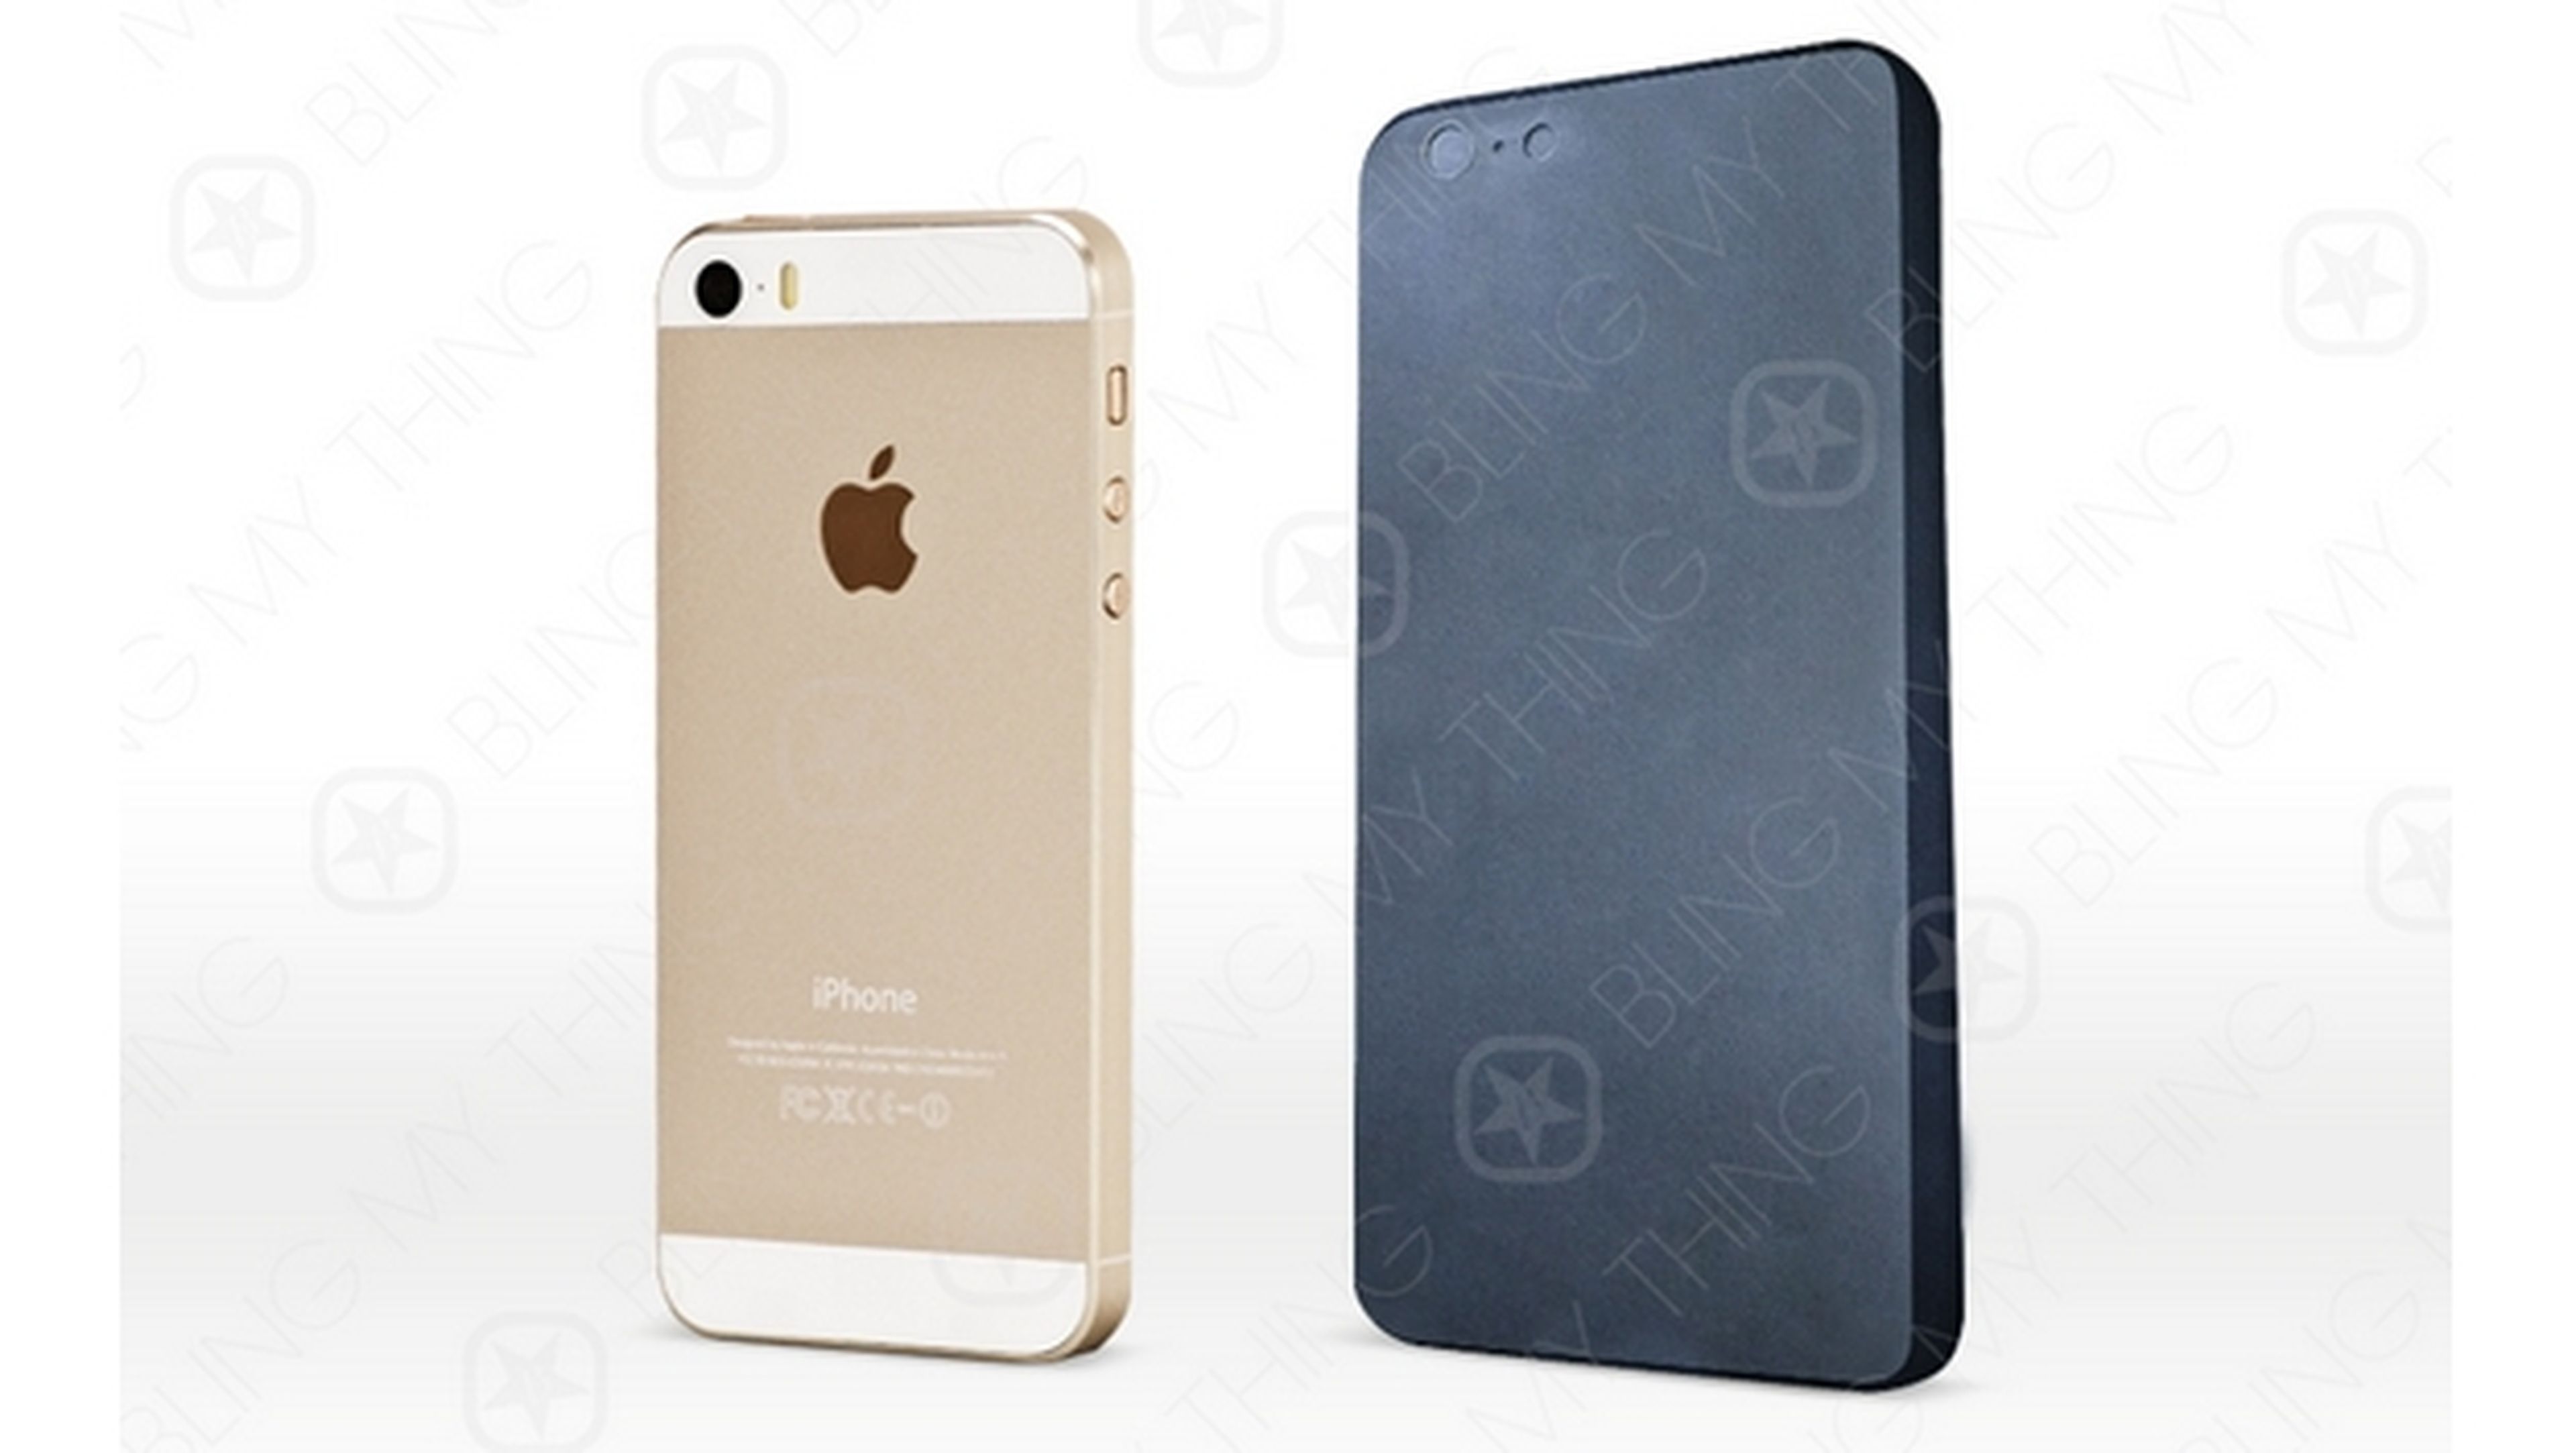 Se filtra un supuesto molde de la carcasa del iPhone 6, para fabricar fundas, que revelaría su aspecto final.